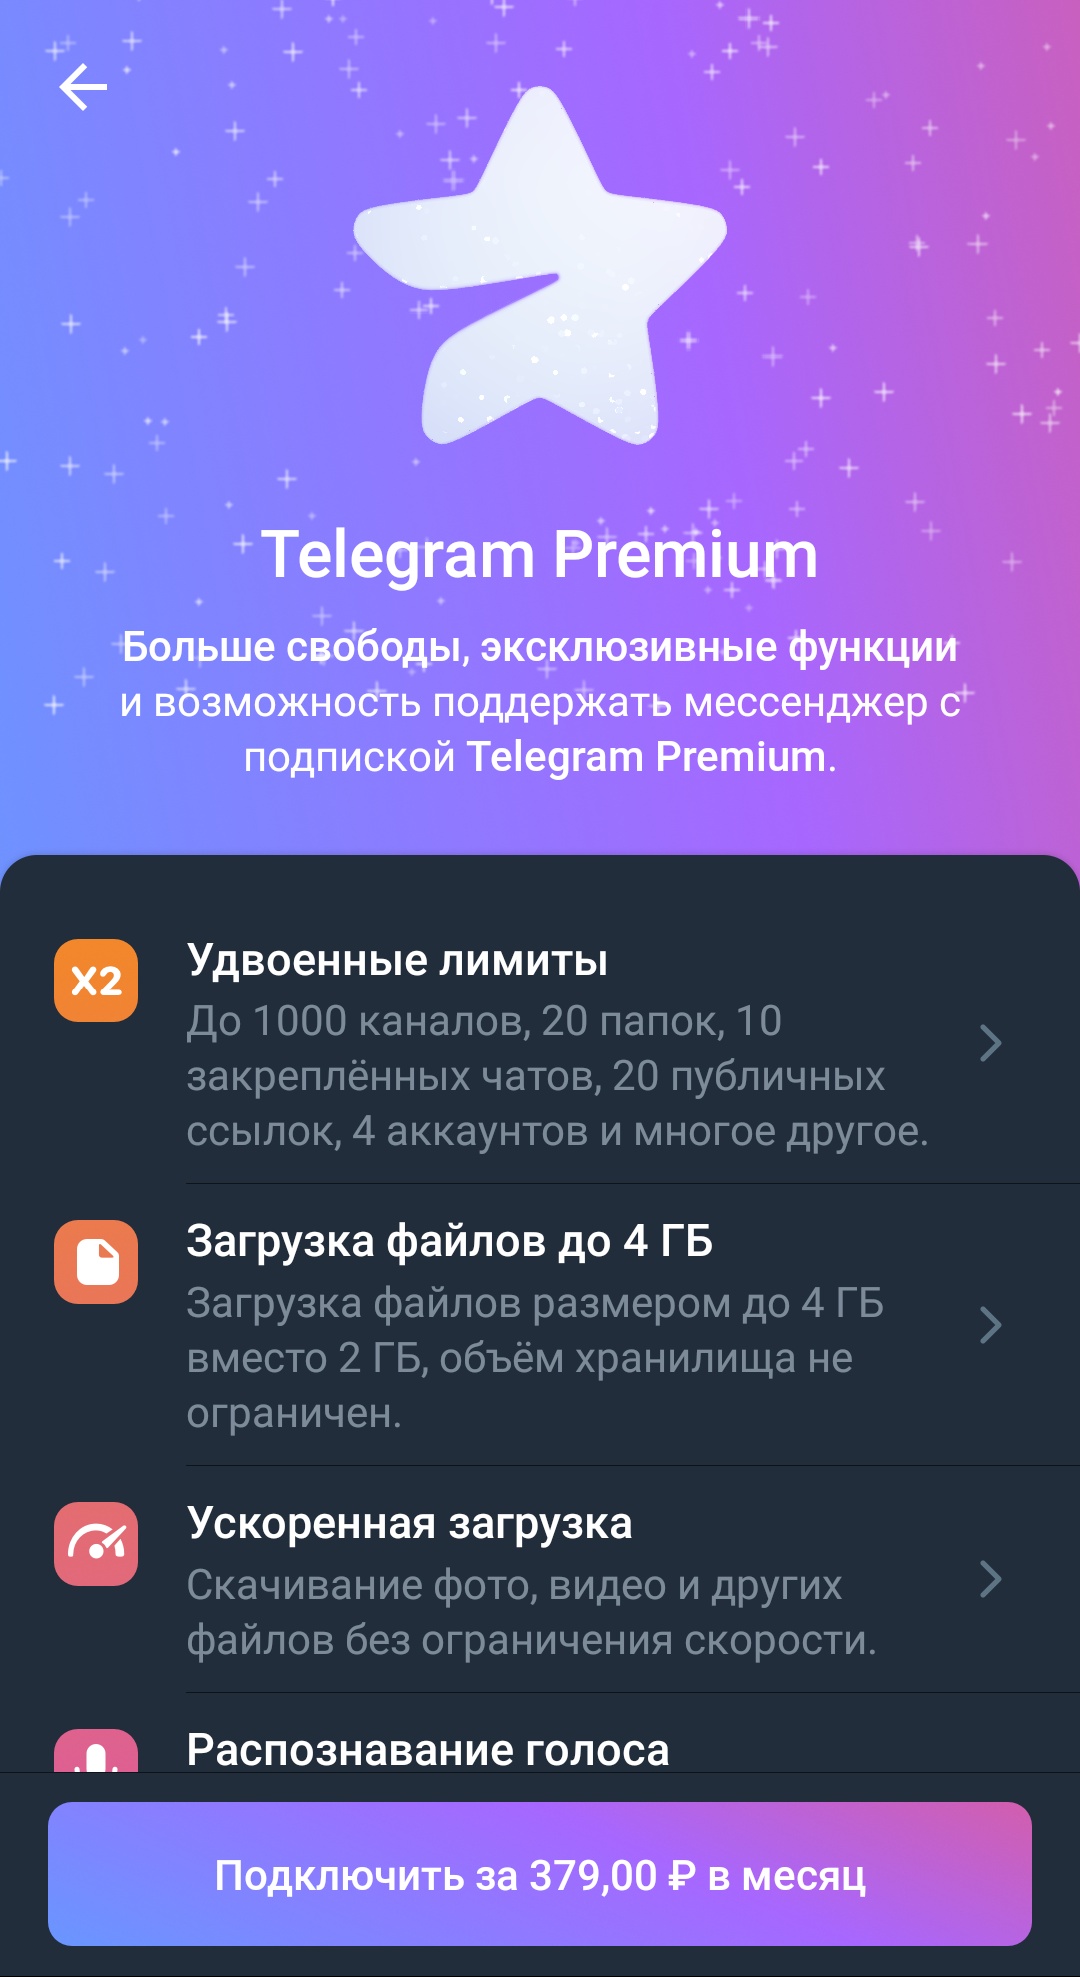 Телеграмма премиум скачать бесплатно андроид (120) фото